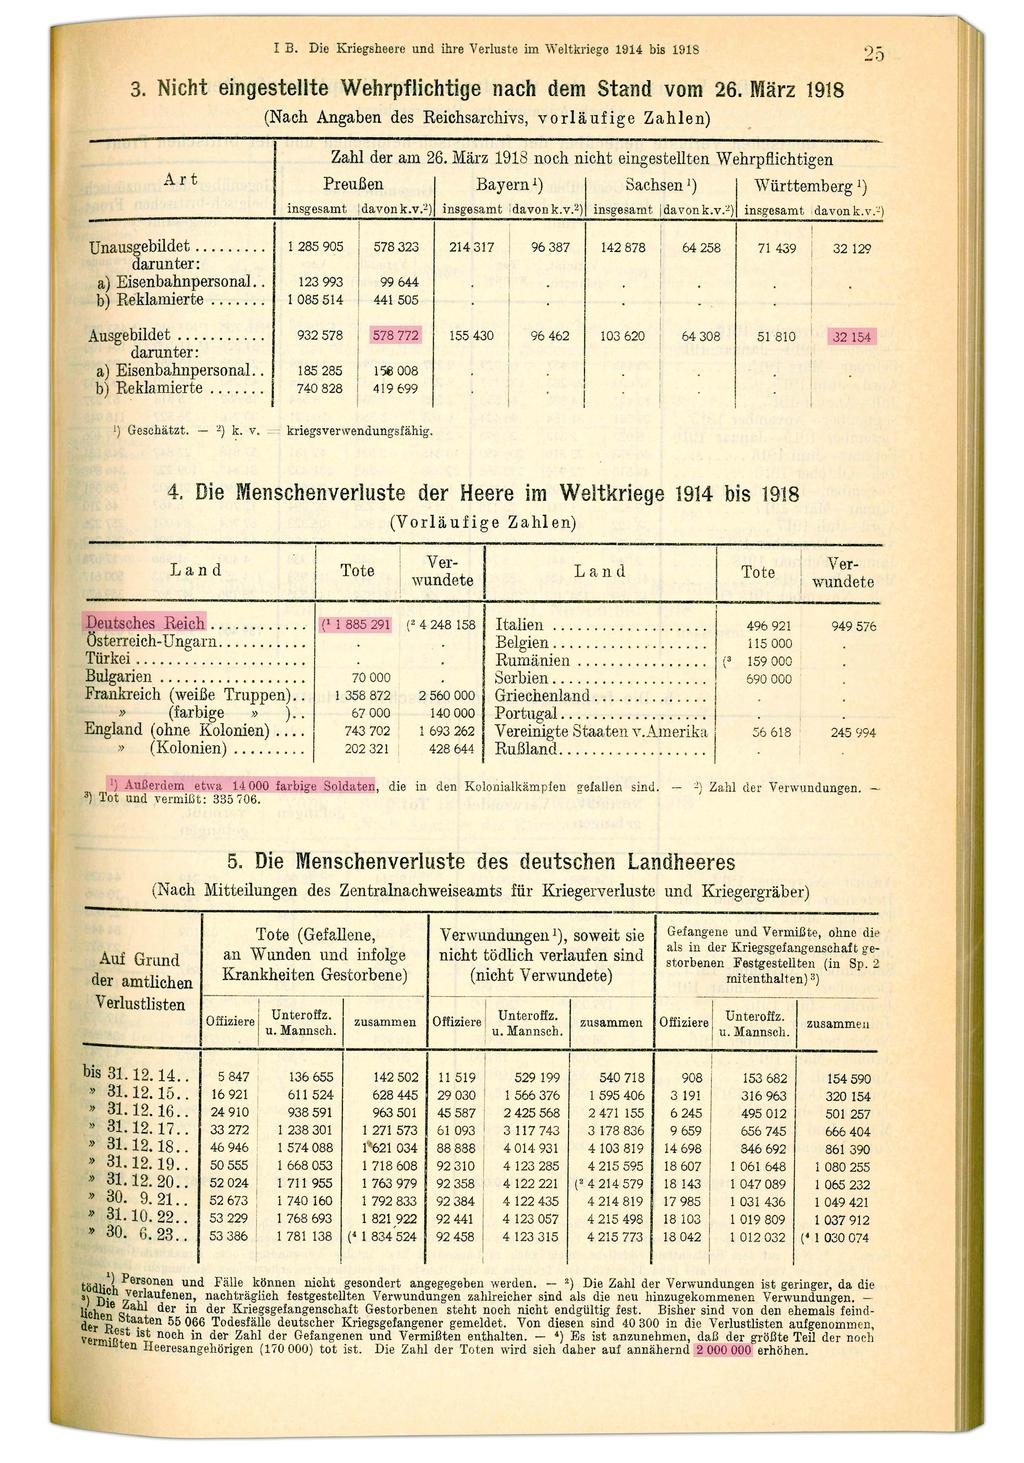 Quelle: Statistisches Jahrbuch für das Deutsche Reich, 44.